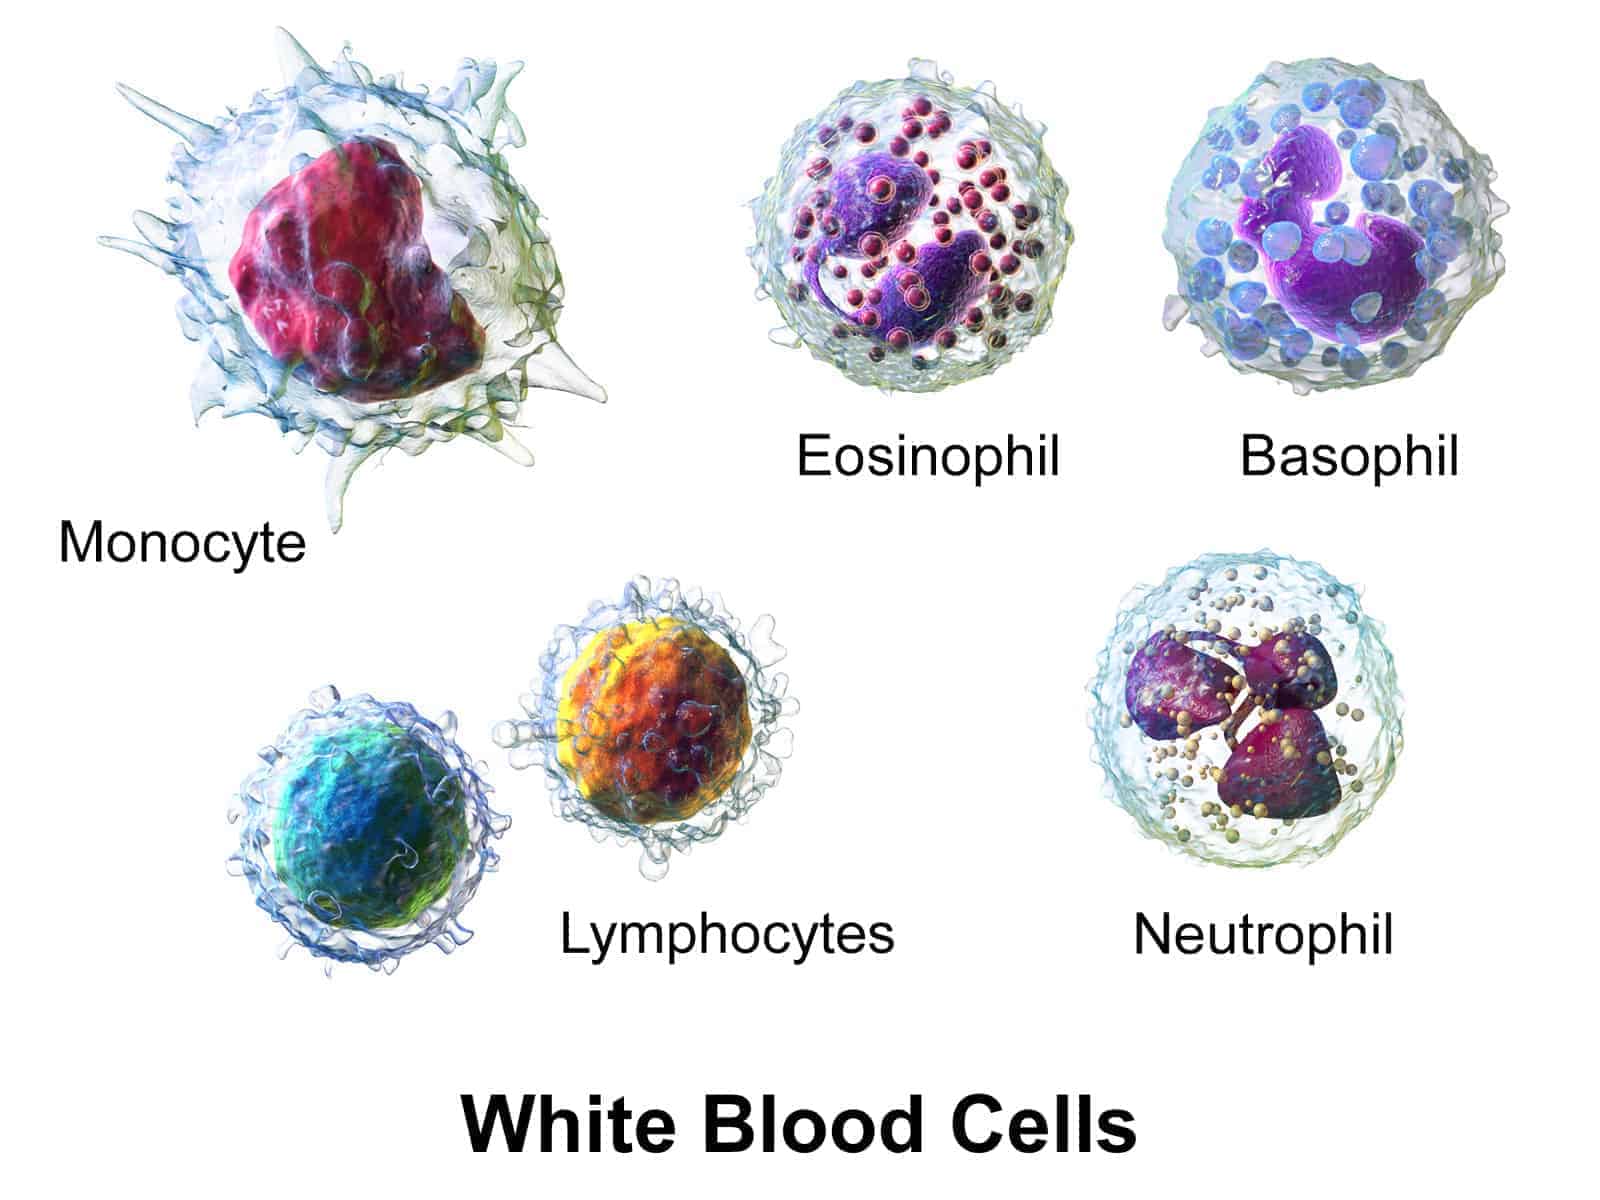 प्रतिरक्षा तंत्र की कोशिकाएं structure and composition of blood in Hindi, रक्त की संरचना एवं संघठन